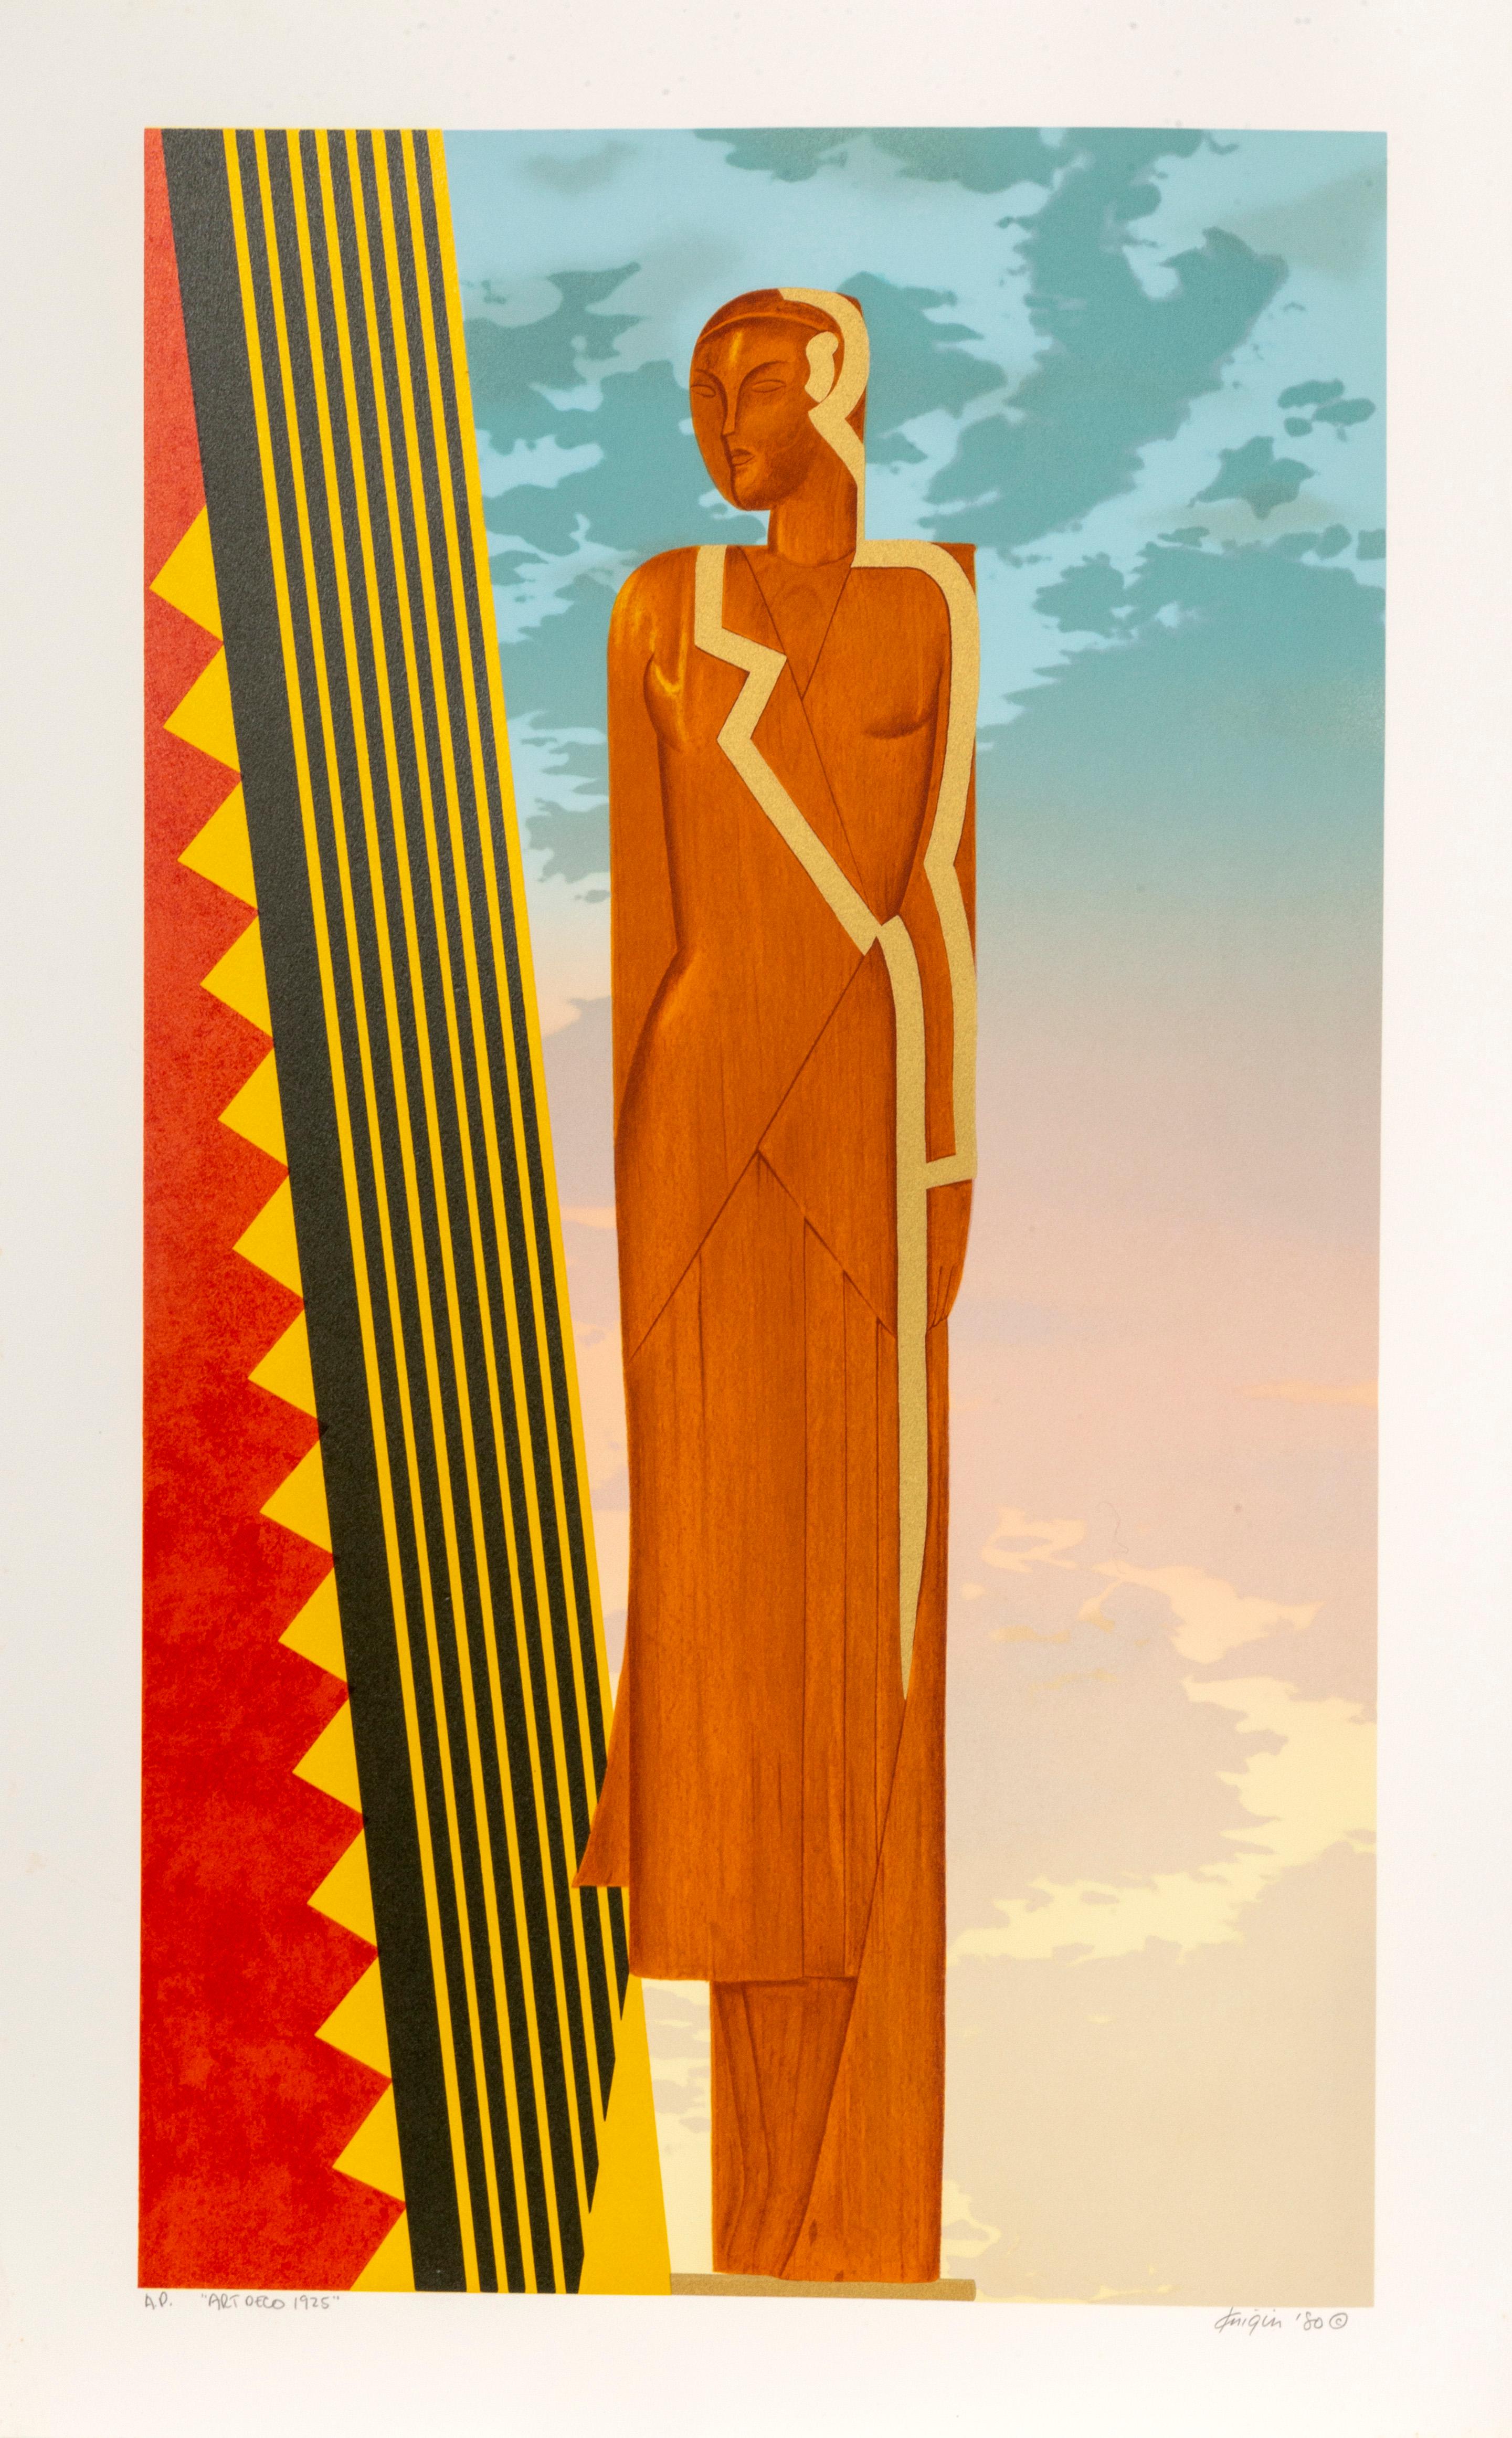 Künstler: Michael Knigin, Amerikaner (1942 - 2011)
Titel: Art Deco 1925
Jahr: 1980
Medium: Siebdruck, signiert und nummeriert mit Bleistift
Auflage: AP
Größe: 33,5 x 21 Zoll (85,09 x 53,34 cm)